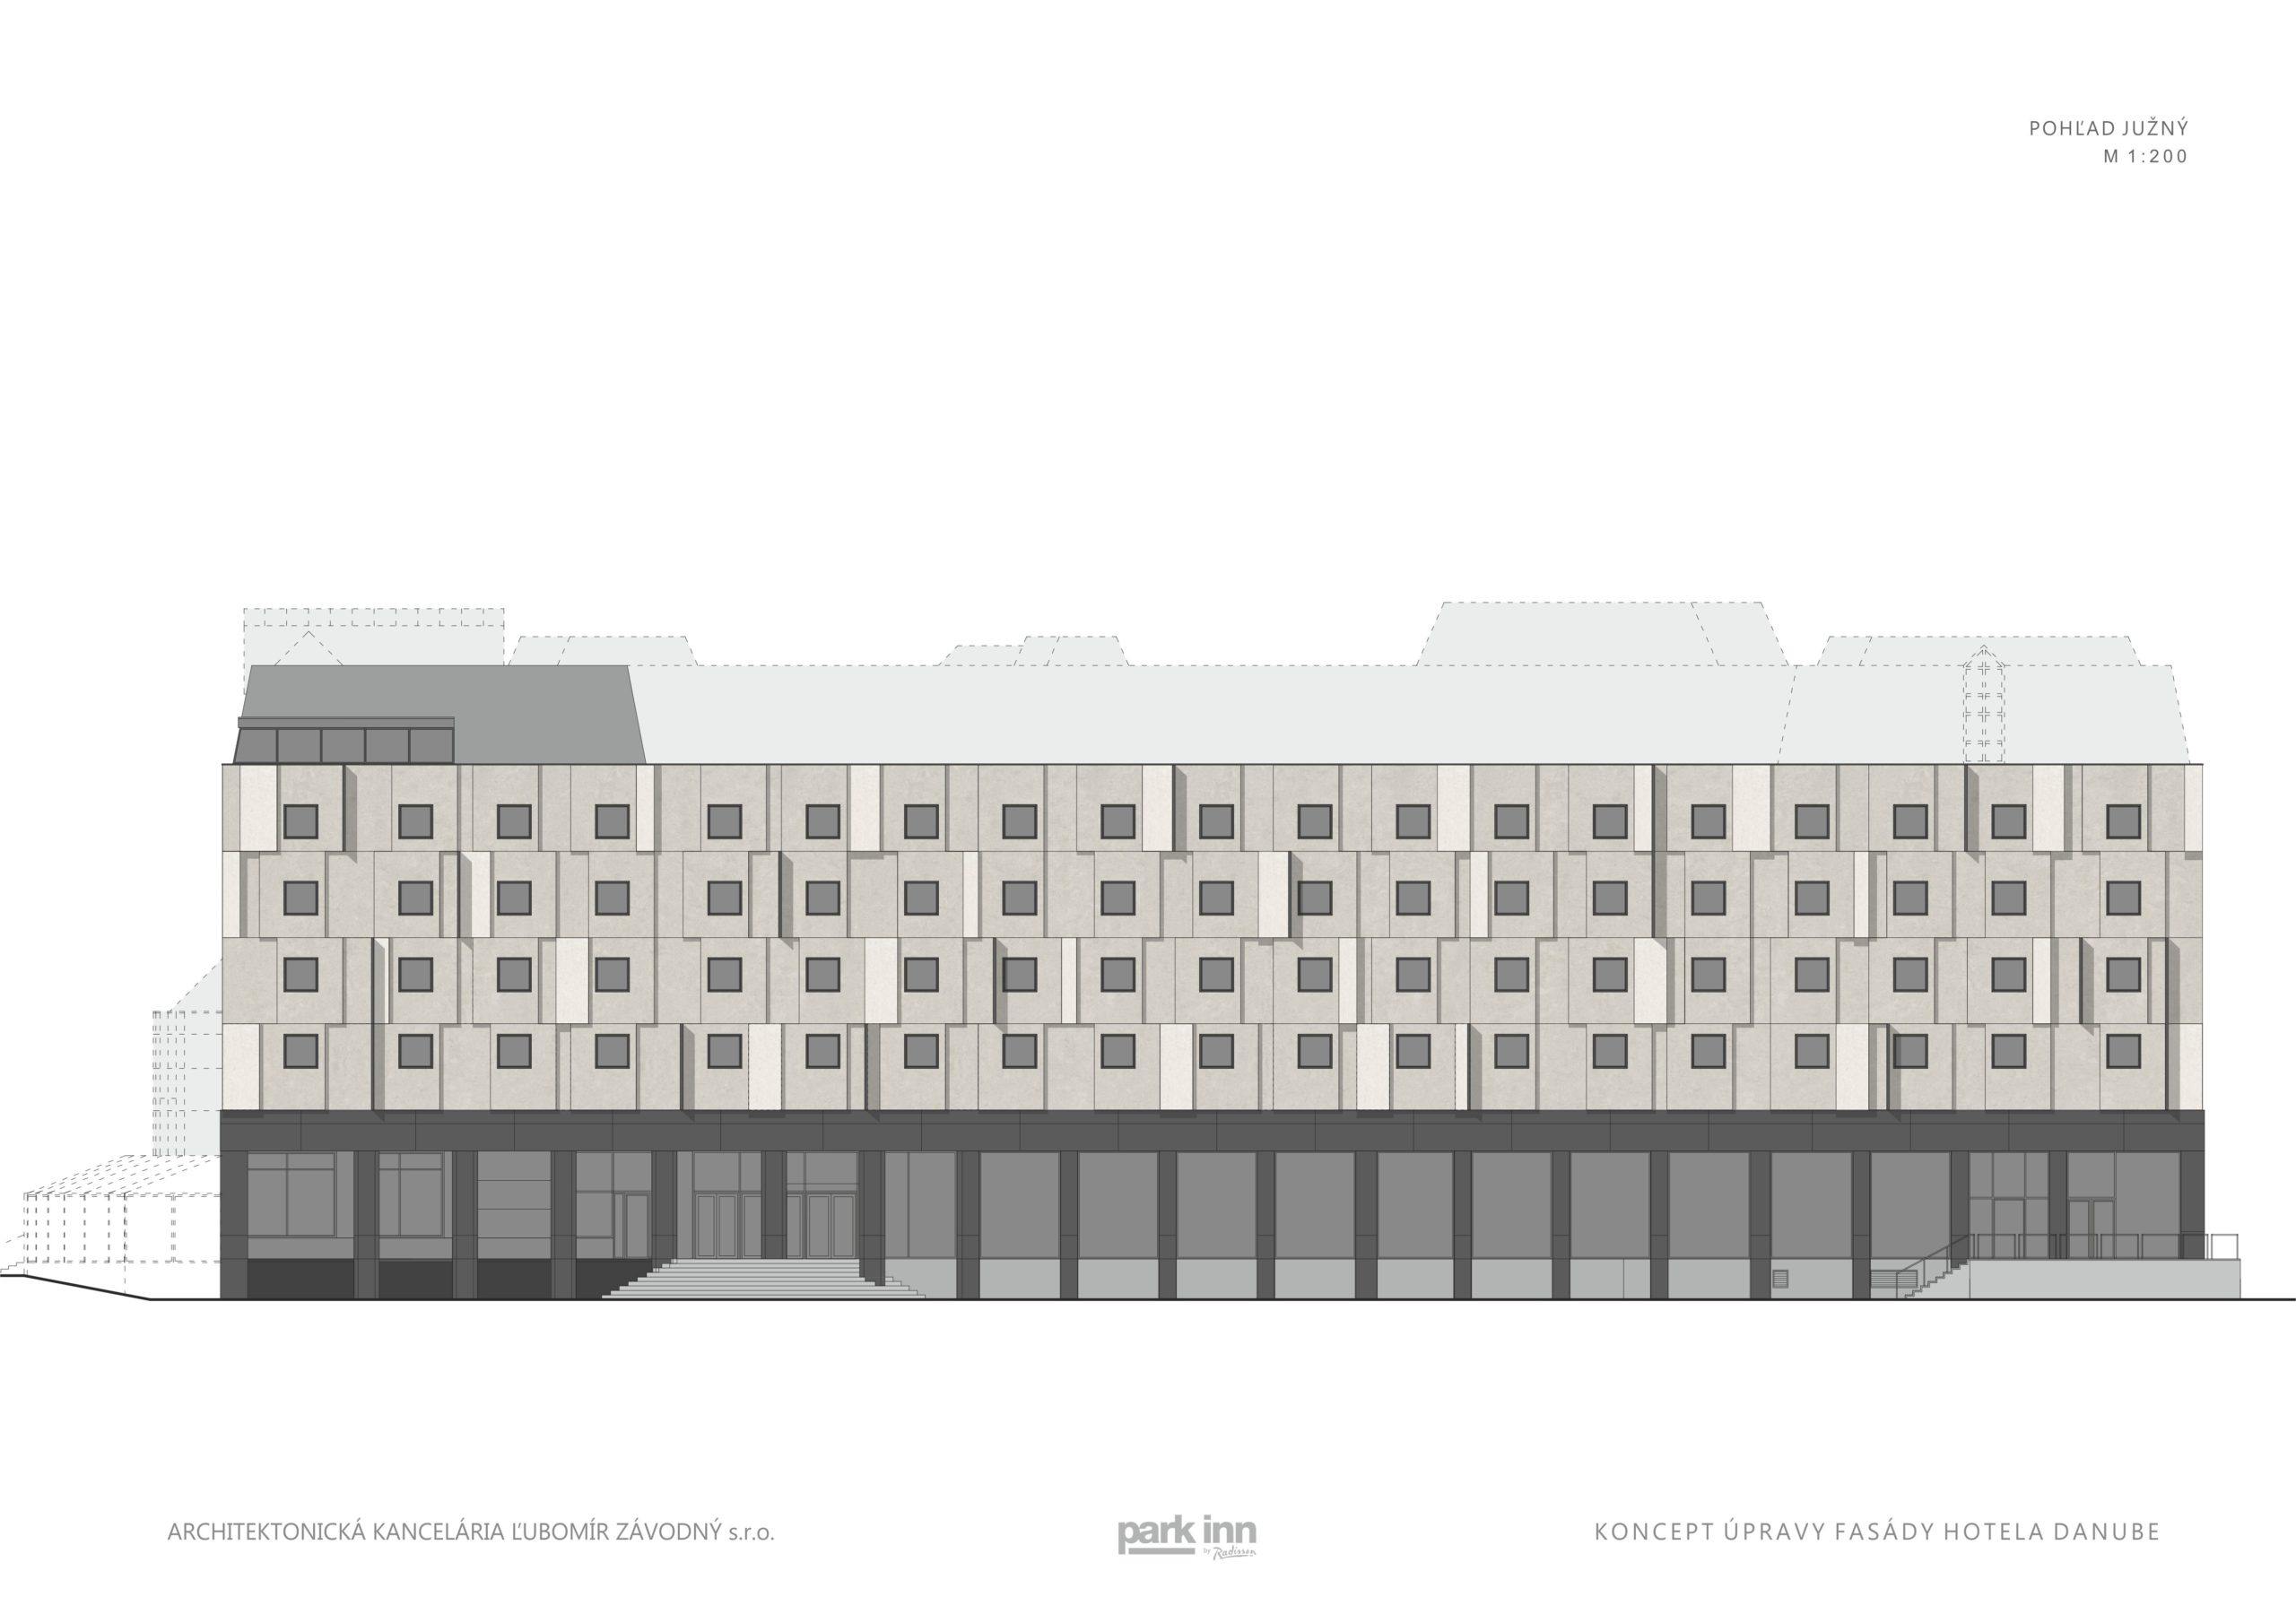 Plánovaný vizuál fasády od architekta Ľubomíra Závodného.